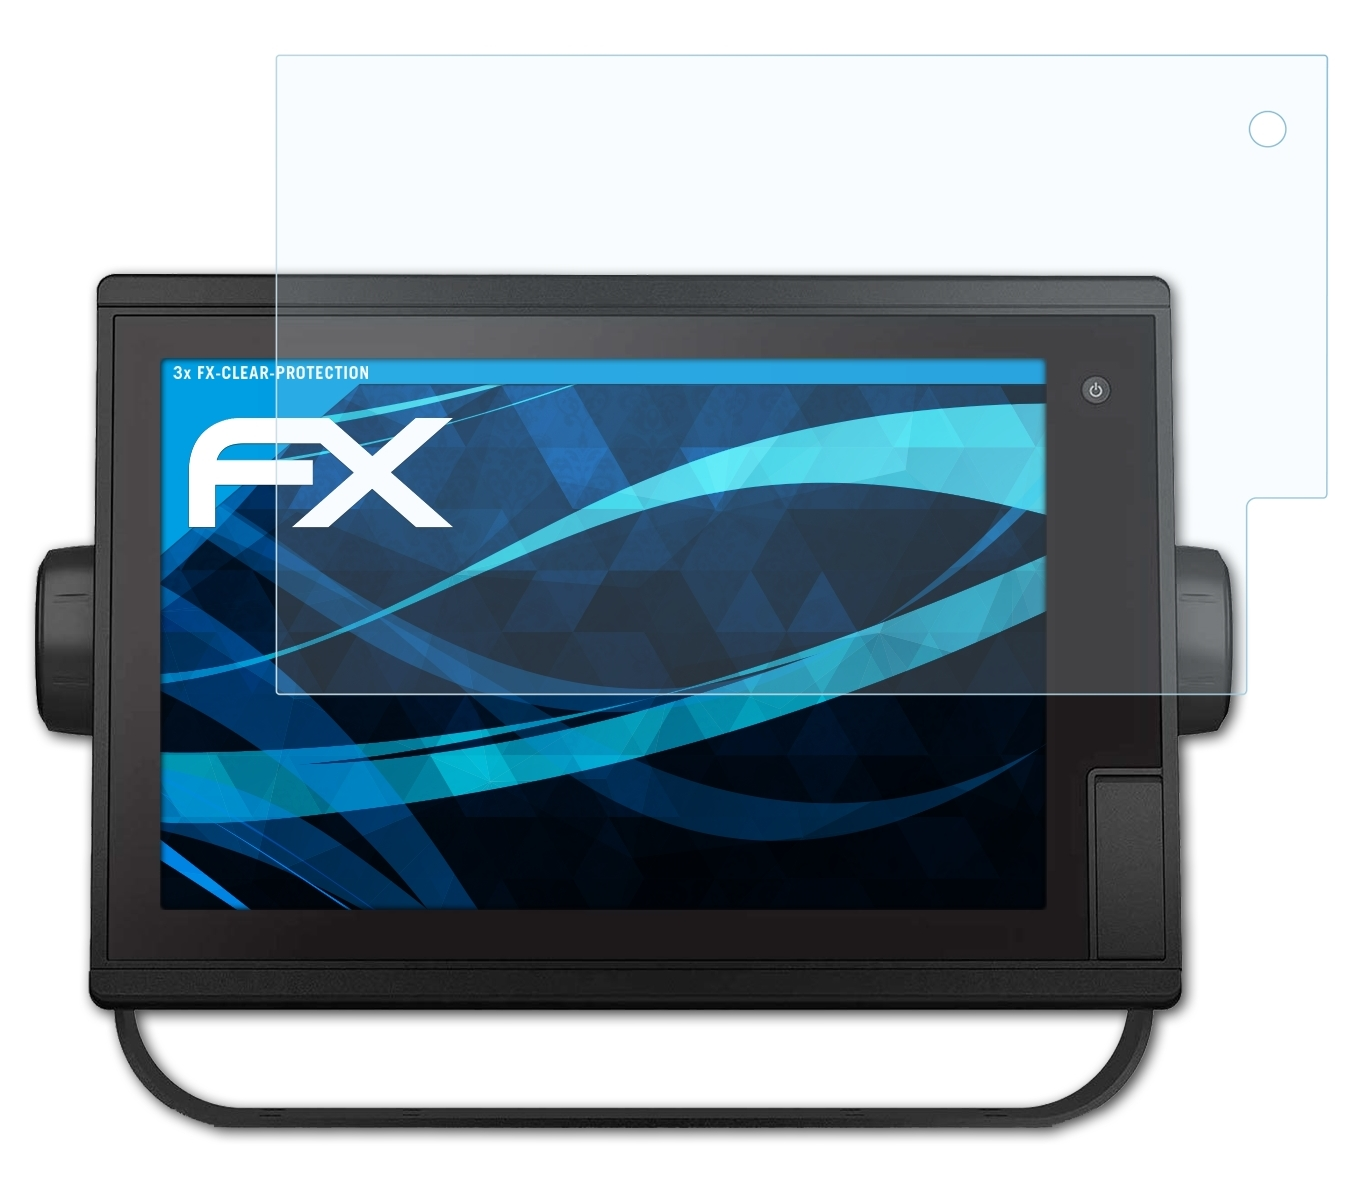 Displayschutz(für (12 1222xsv Garmin ATFOLIX Plus 3x GPSMap FX-Clear Inch))